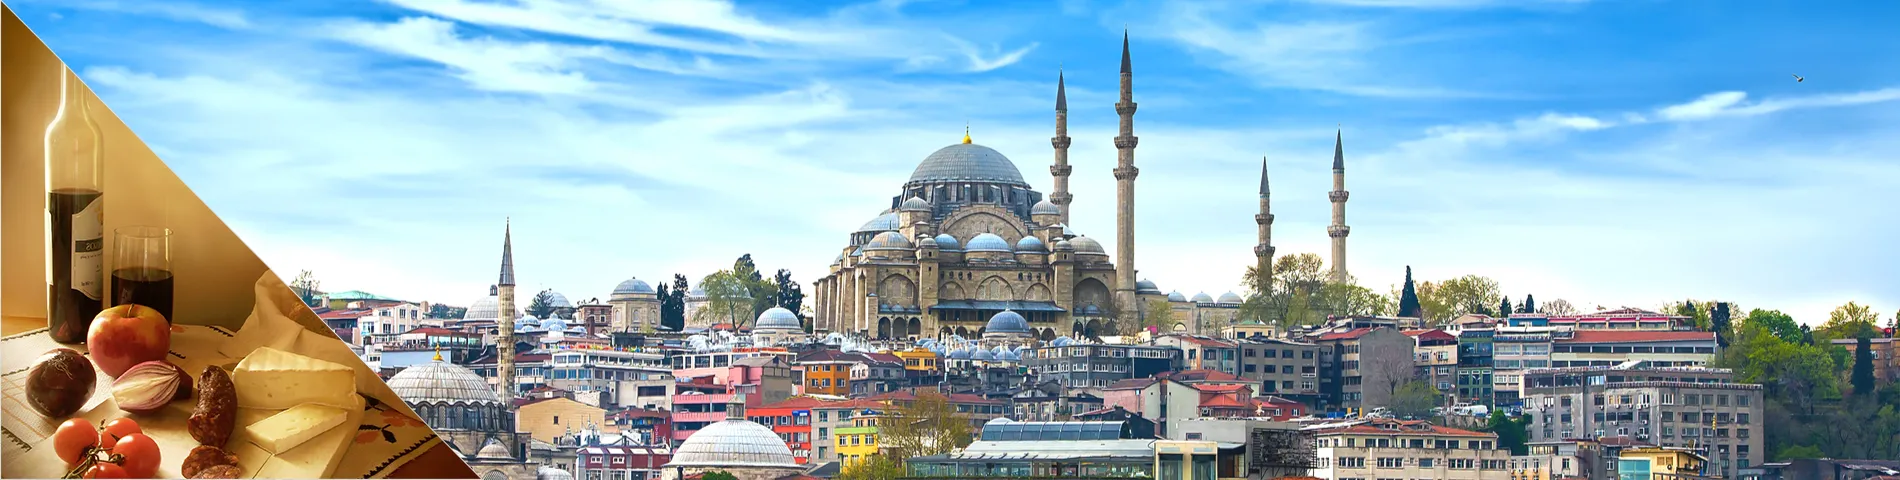 Türkei - Türkisch & Kultur